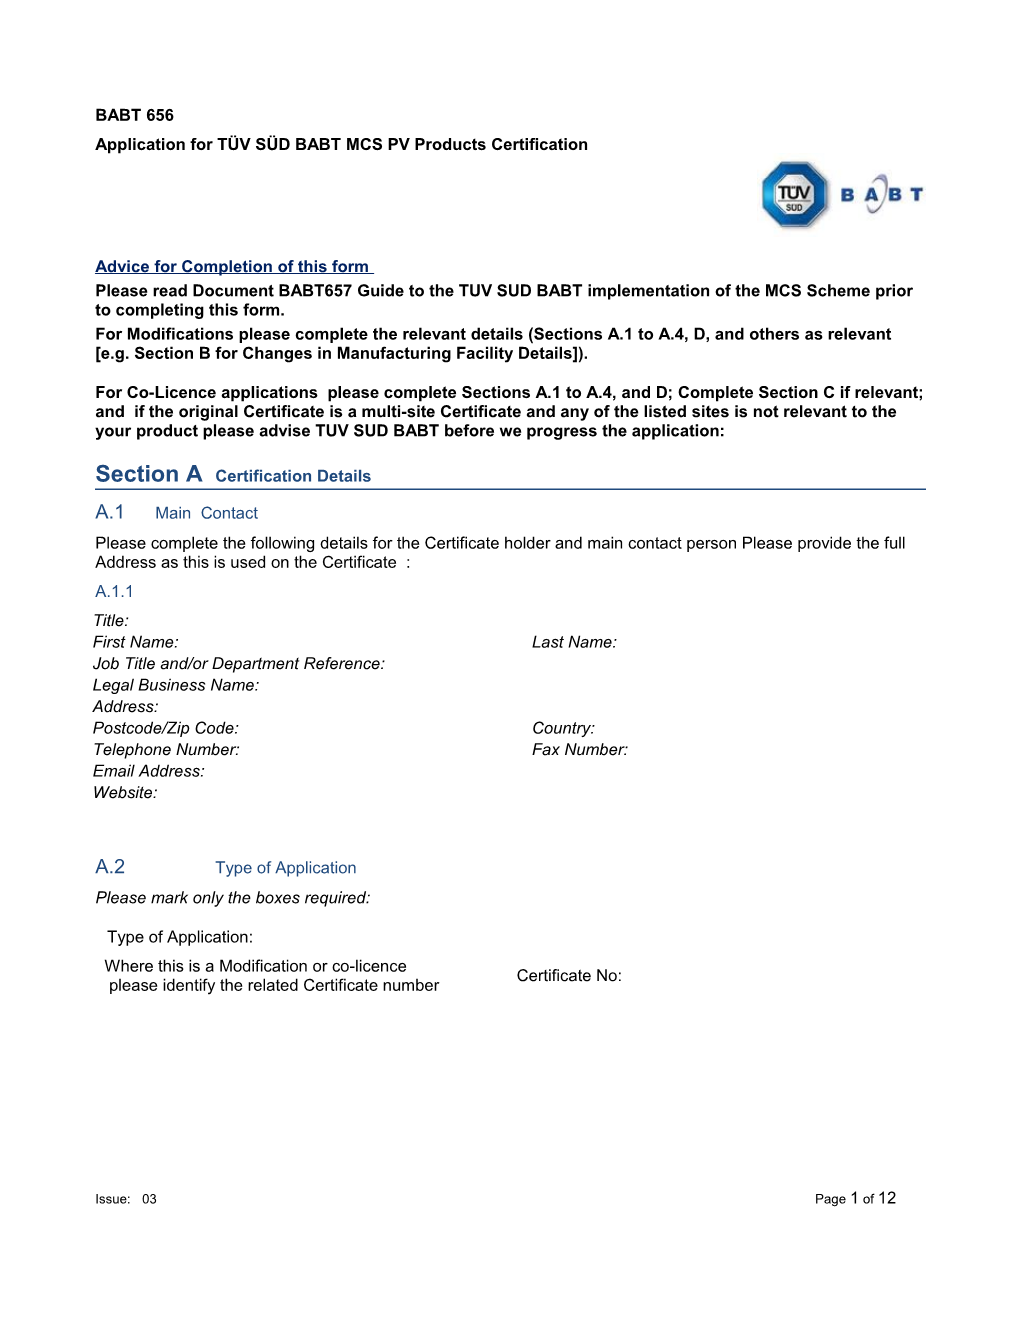 Application for TÜV SÜD BABT MCS PV Products Certification